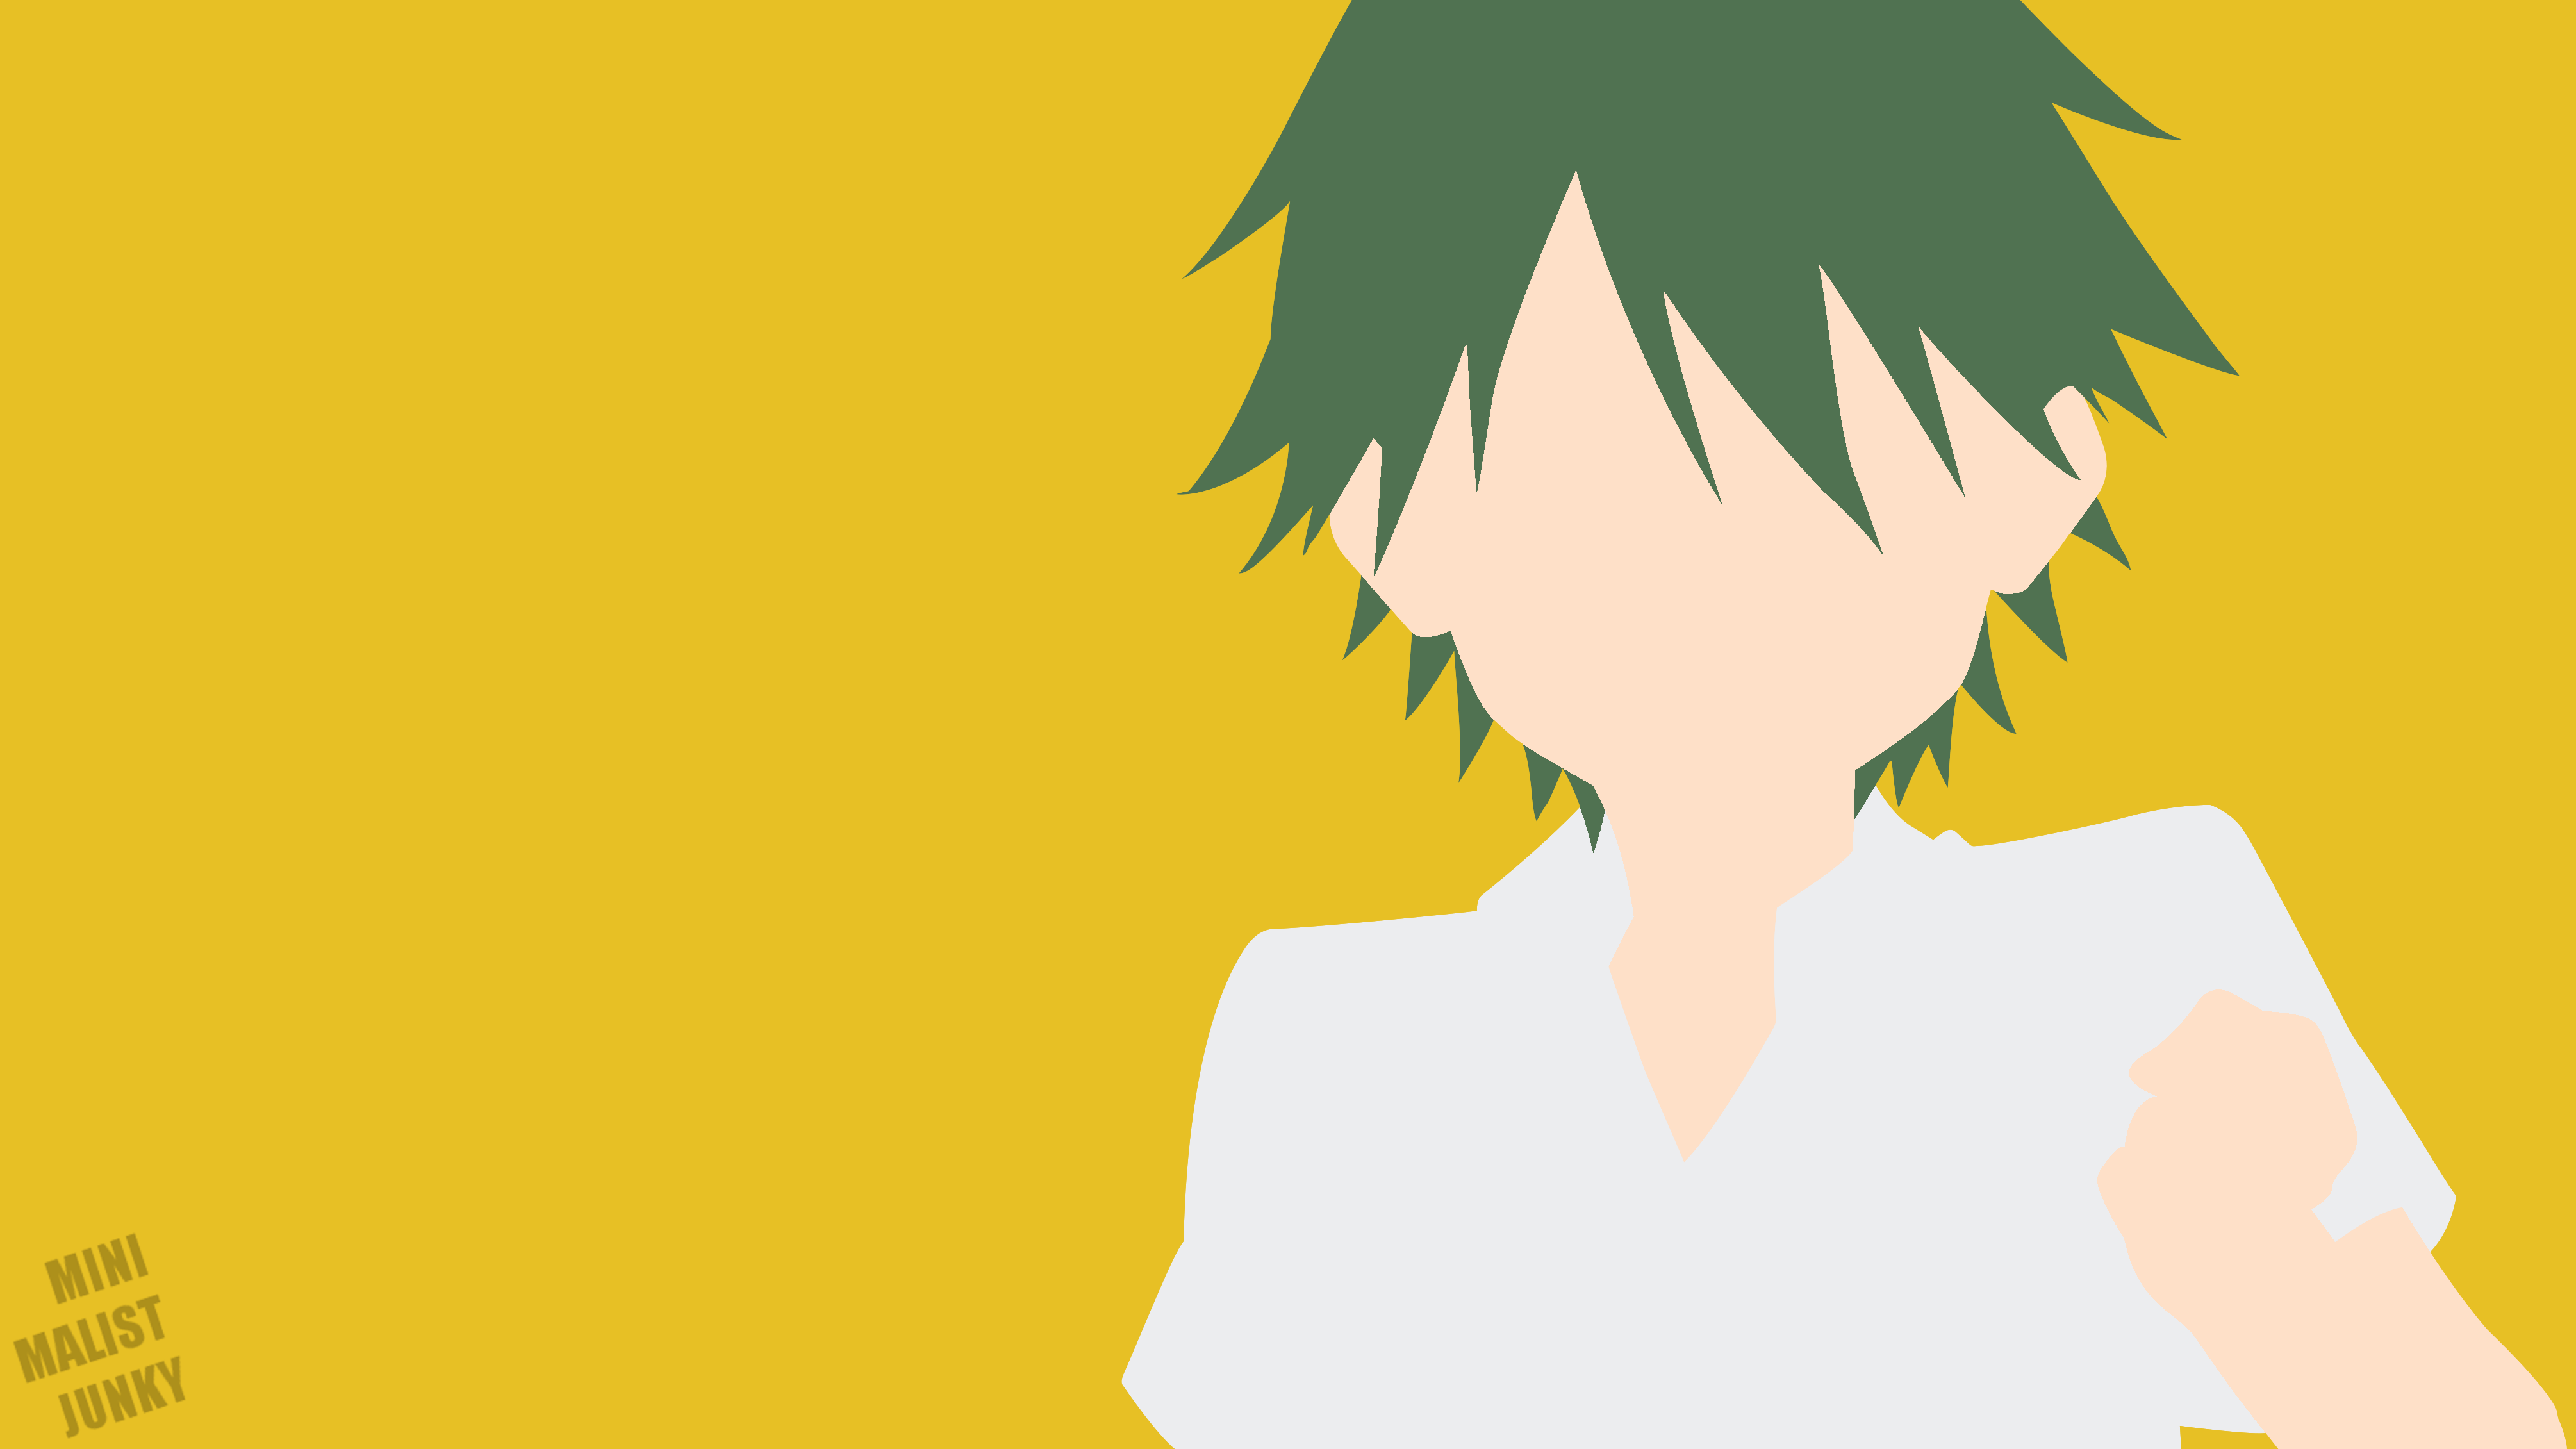 Blend S Kouyou Akizuki Minimalism Simple Background Anime Boys MinimalistJunky 4020x2261